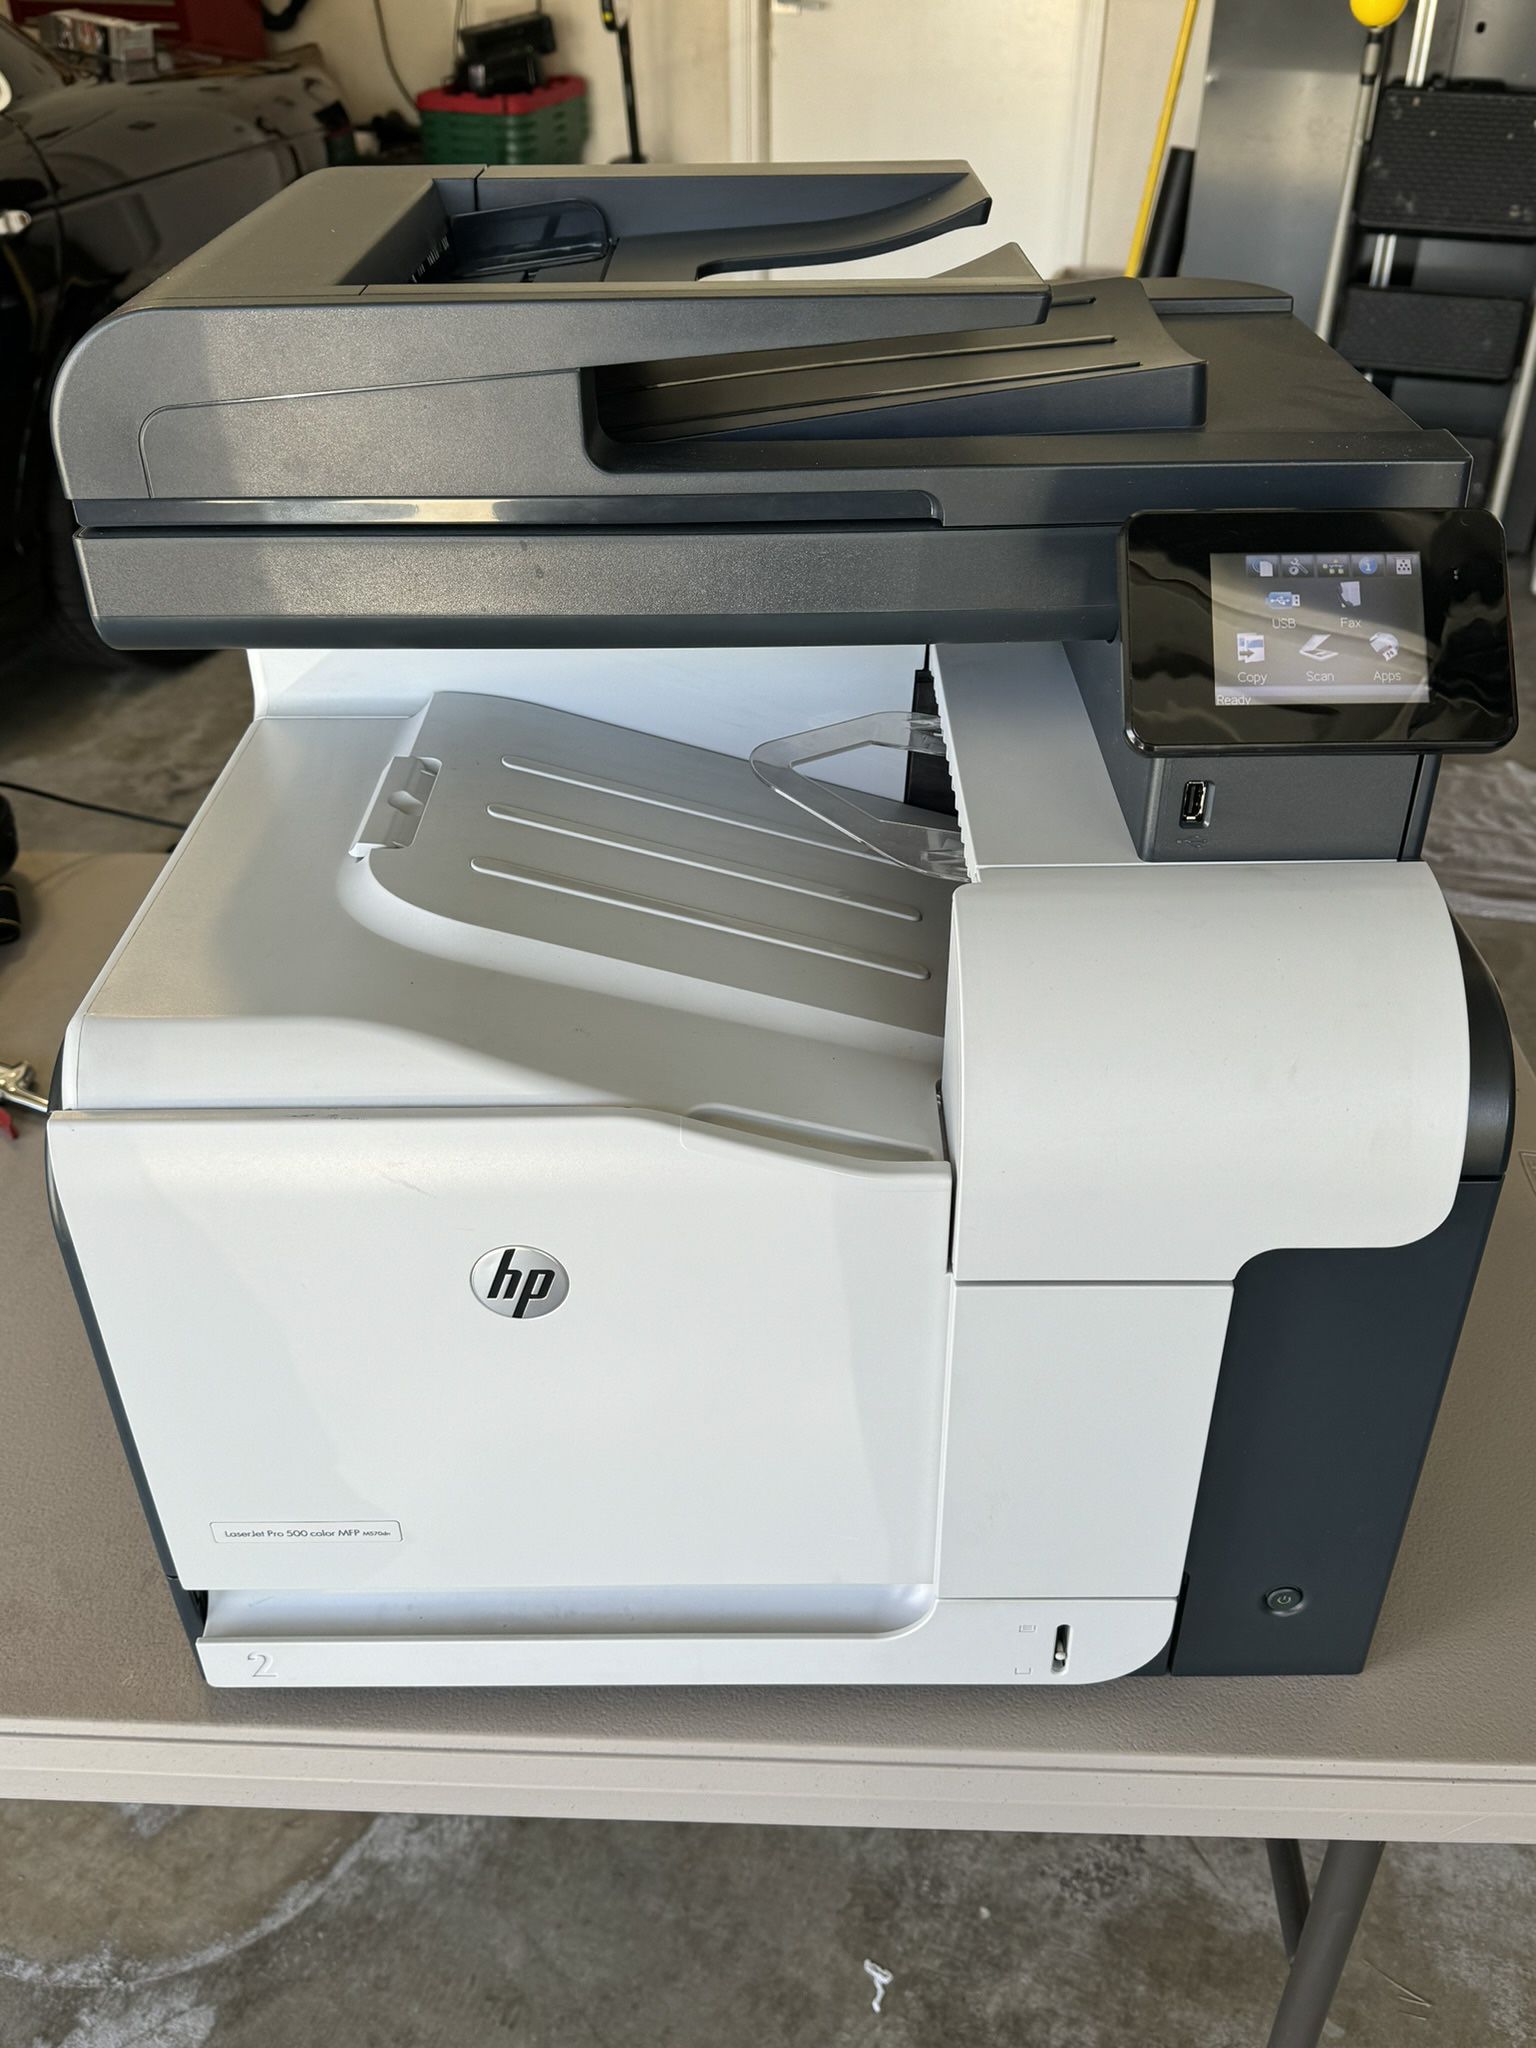 Laser Jet pro 500 Color Printer 